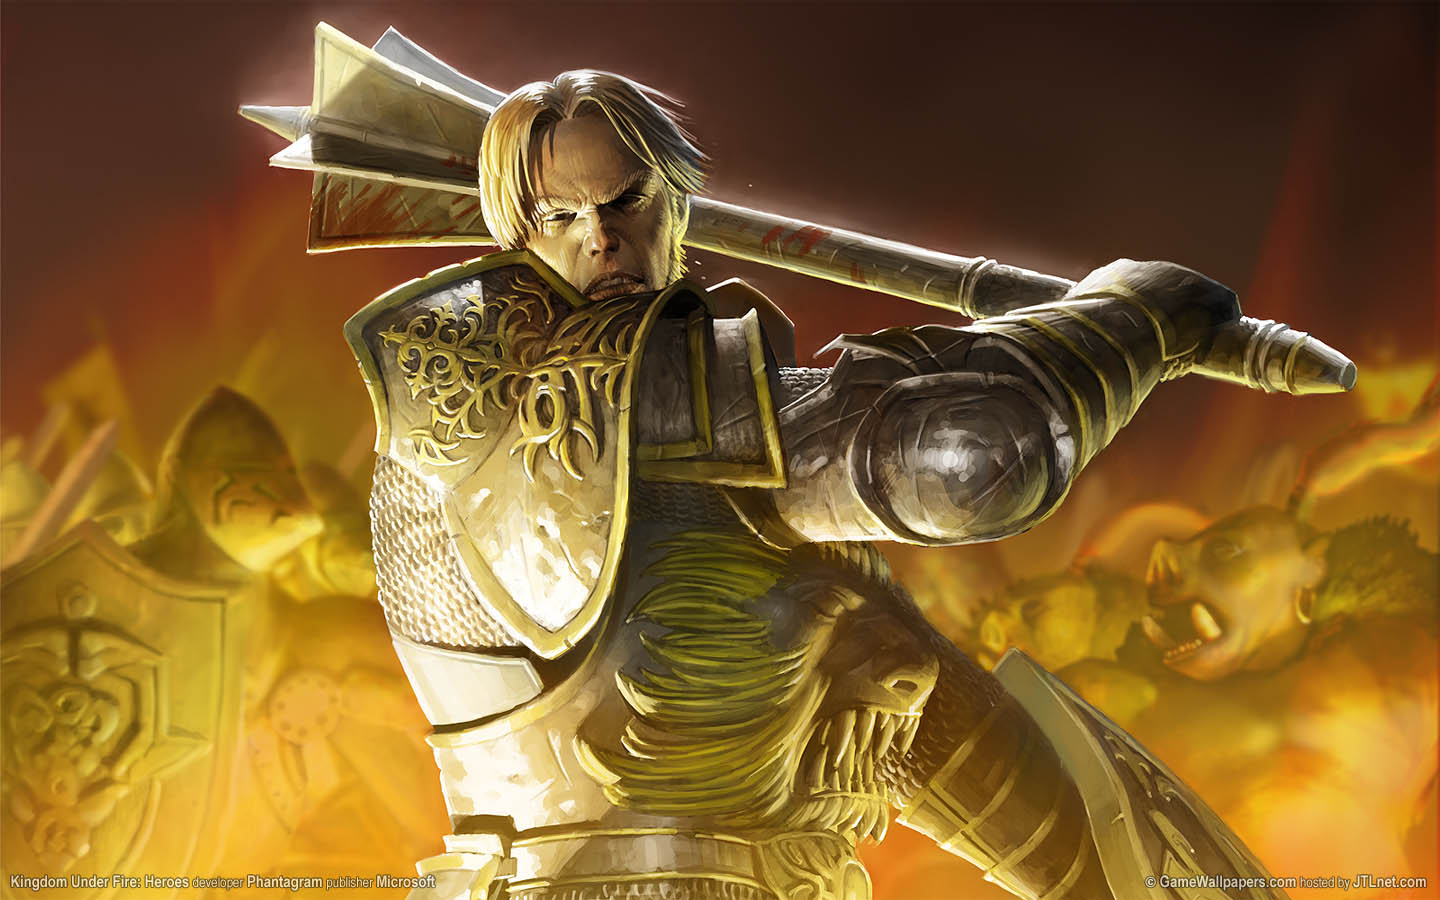 Kingdom Under Fire: Heroes fond d'cran 01 1440x900